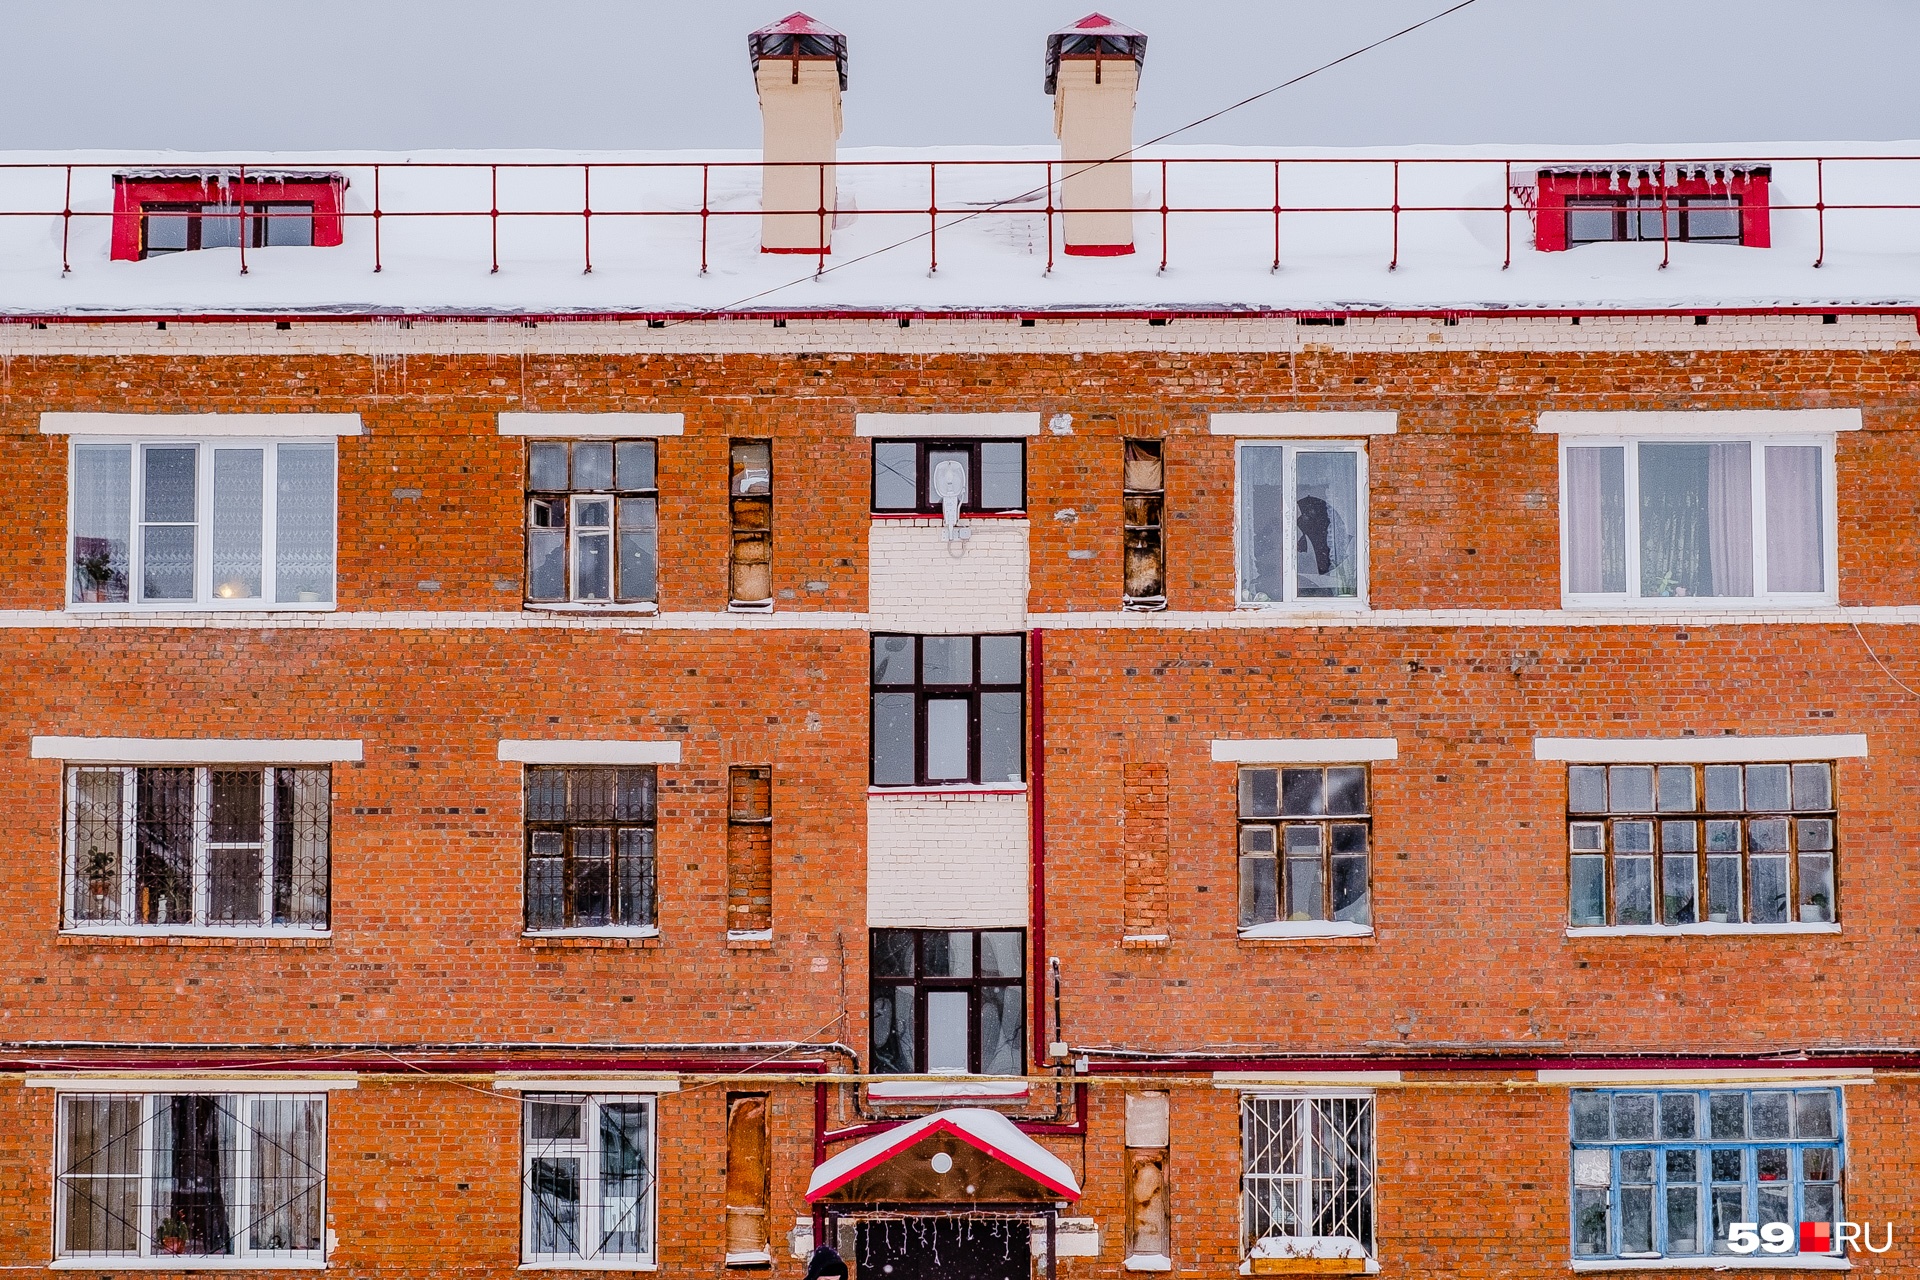 Еще один дом на Циолковского, 11. Ремонтники выделили чердачные надстройки и козырек над входом красным цветом